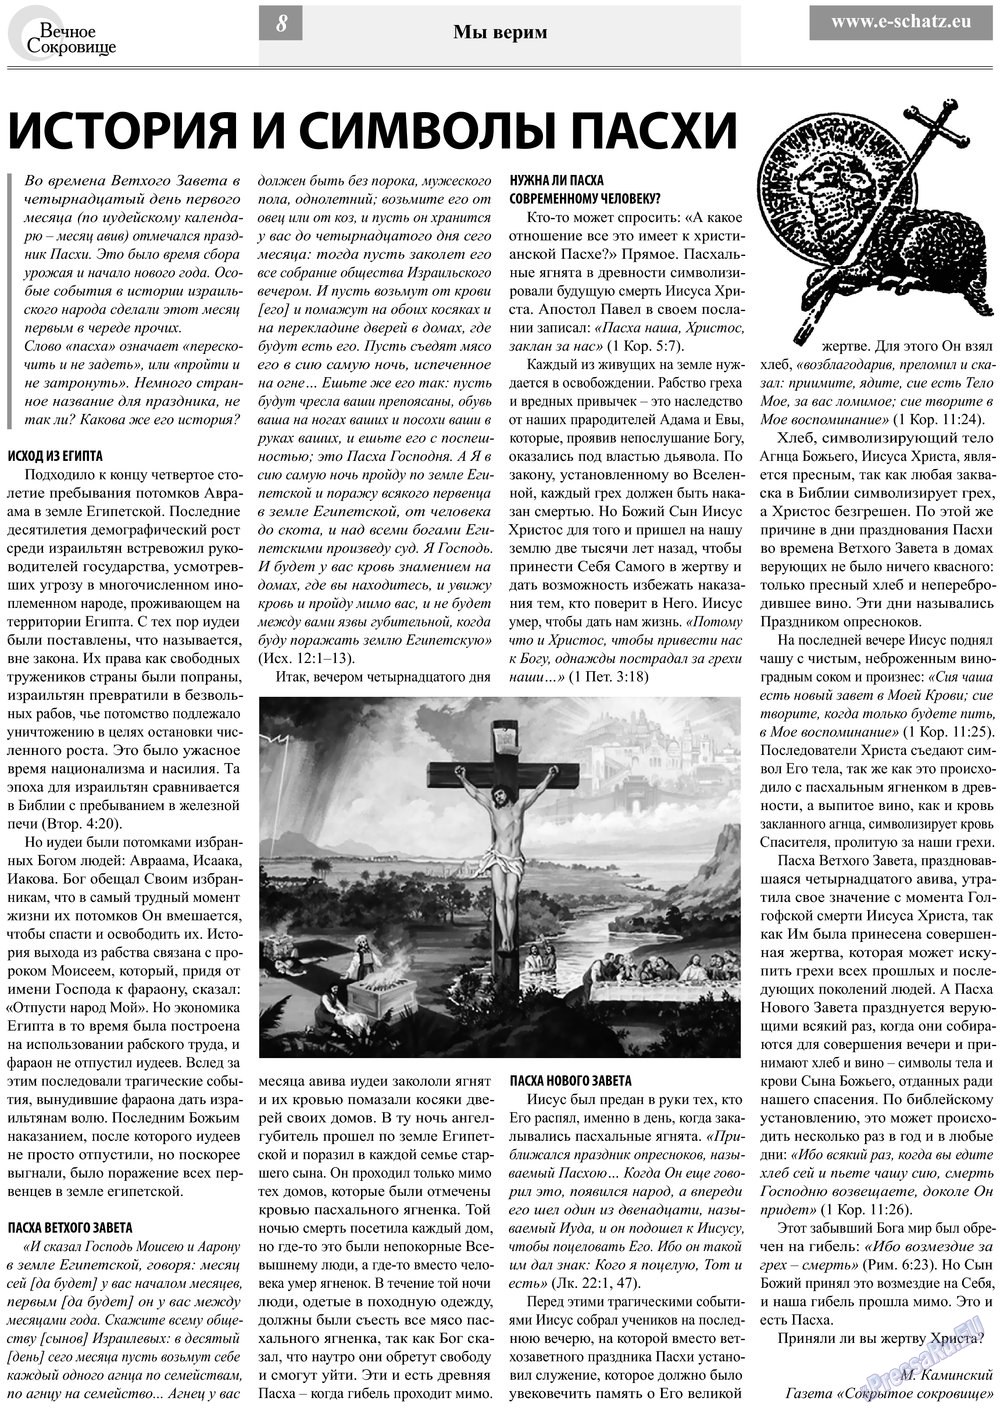 Вечное сокровище, газета. 2013 №2 стр.8